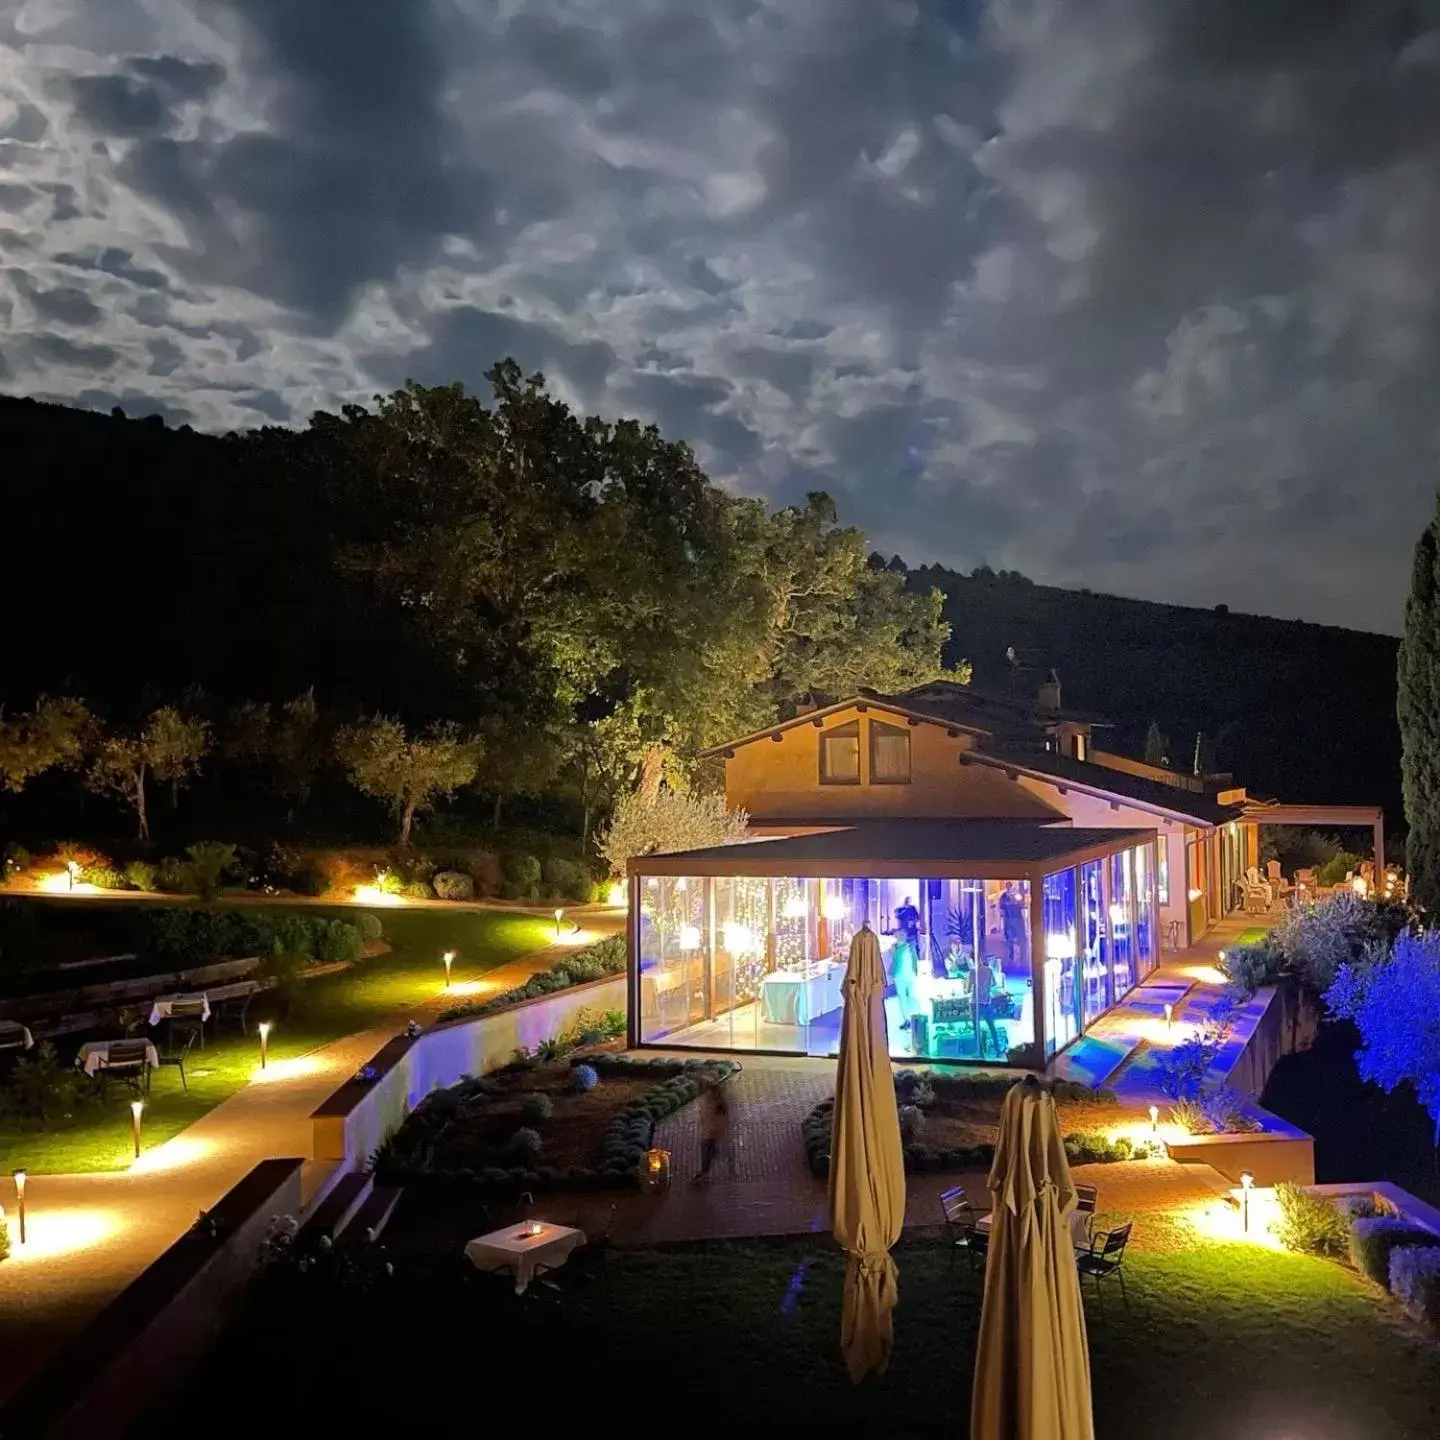 Night, Pool View in La Quercetta